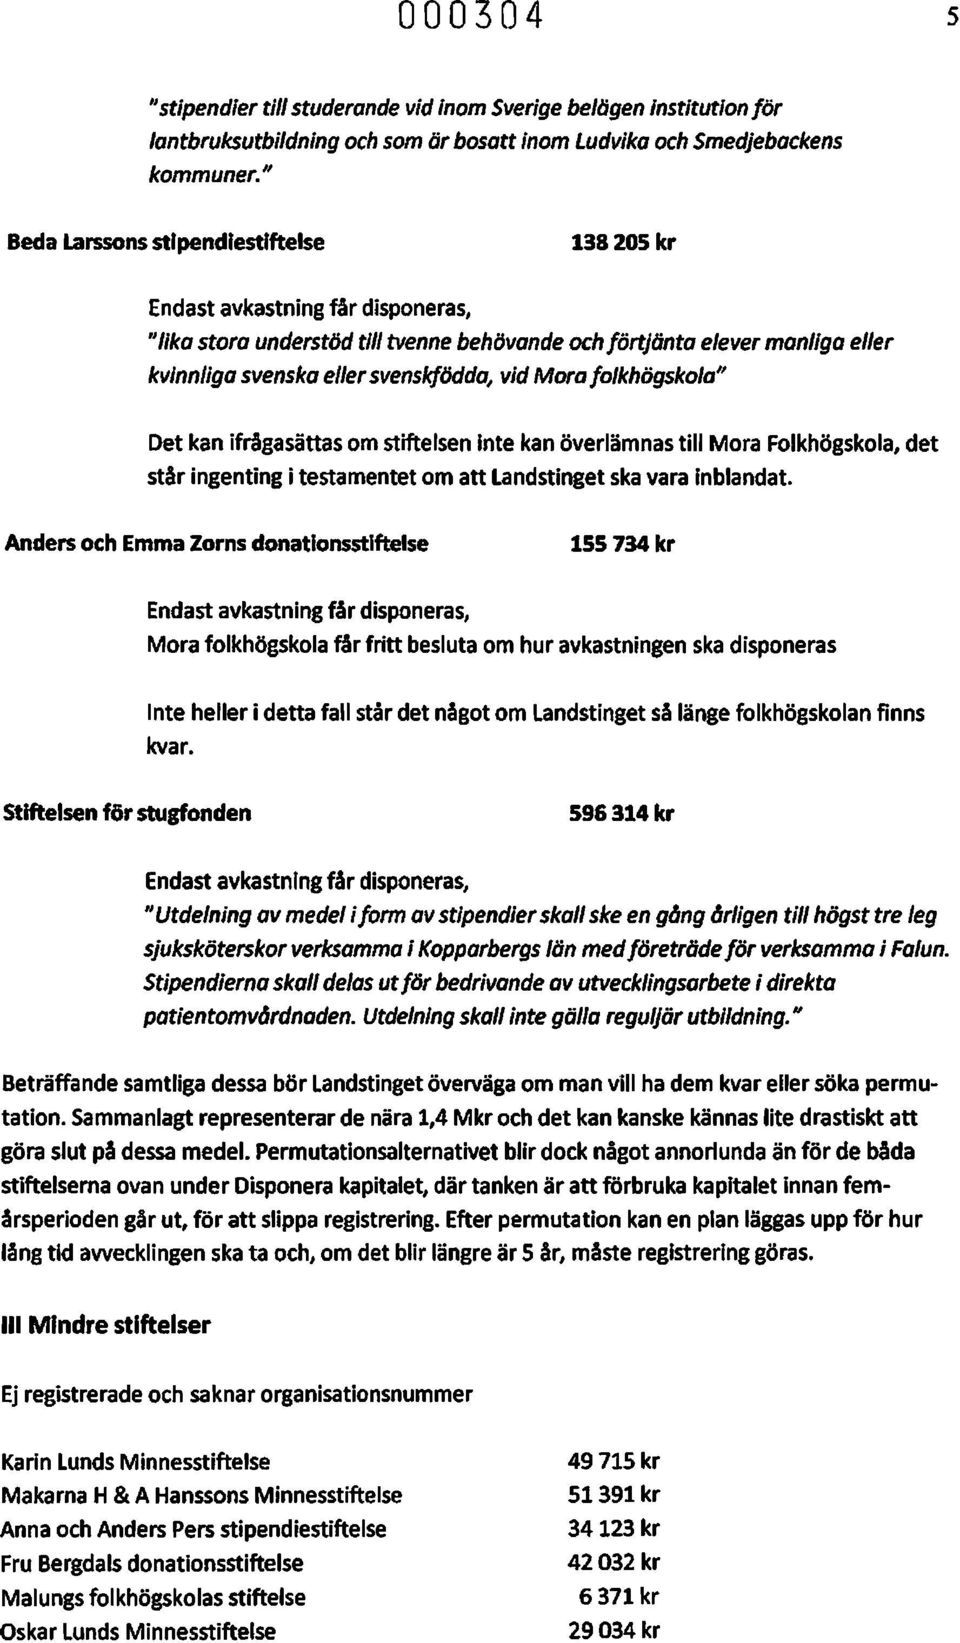 Landstinget Dalarna samförvaltade stiftelser - PDF Gratis nedladdning